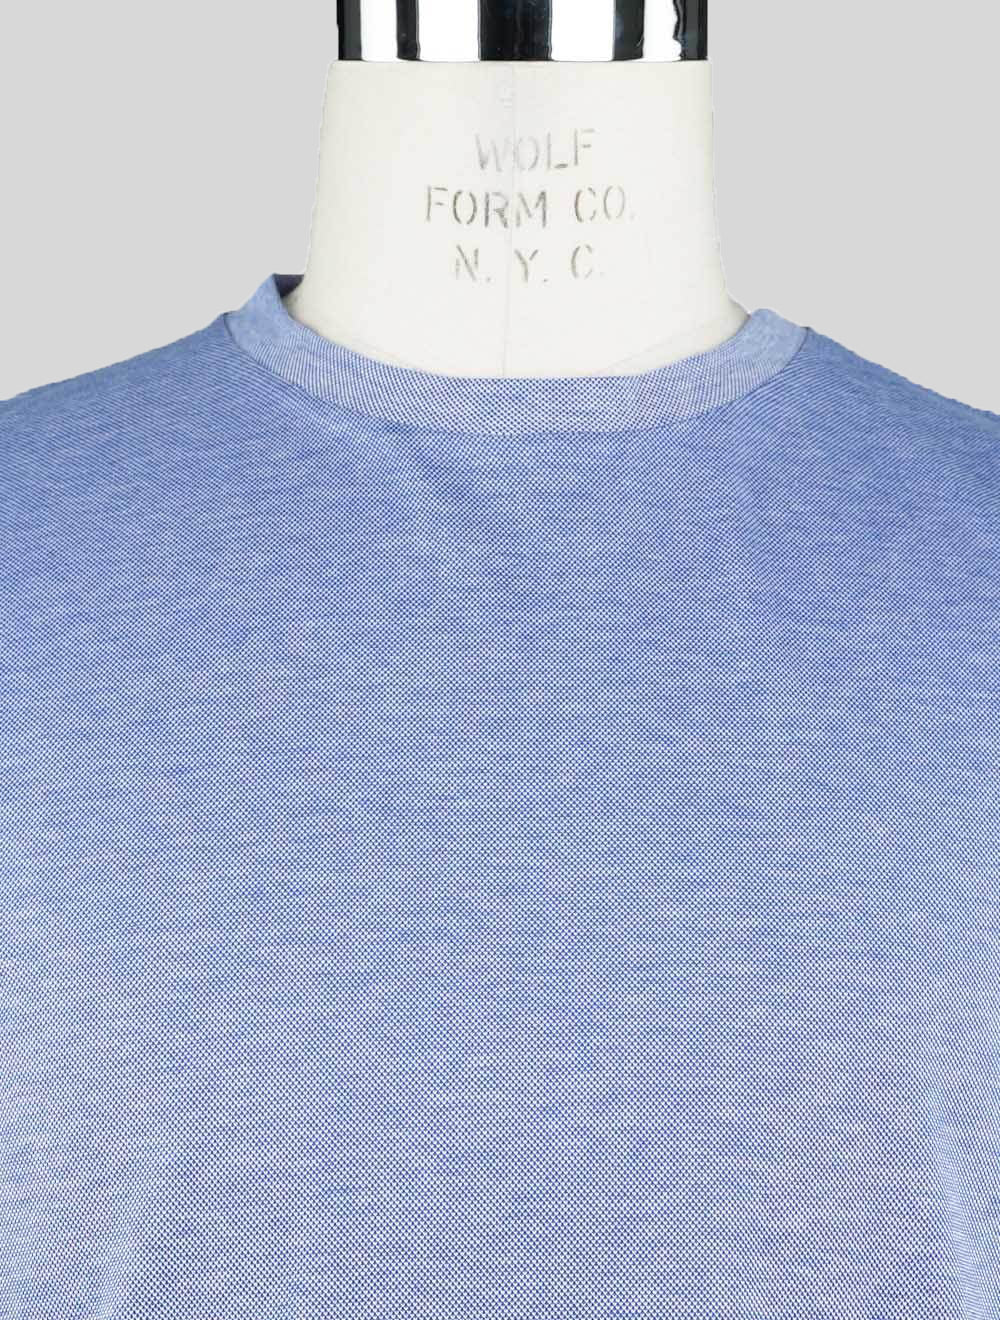 Sartorio Napoli camiseta azul claro de algodón